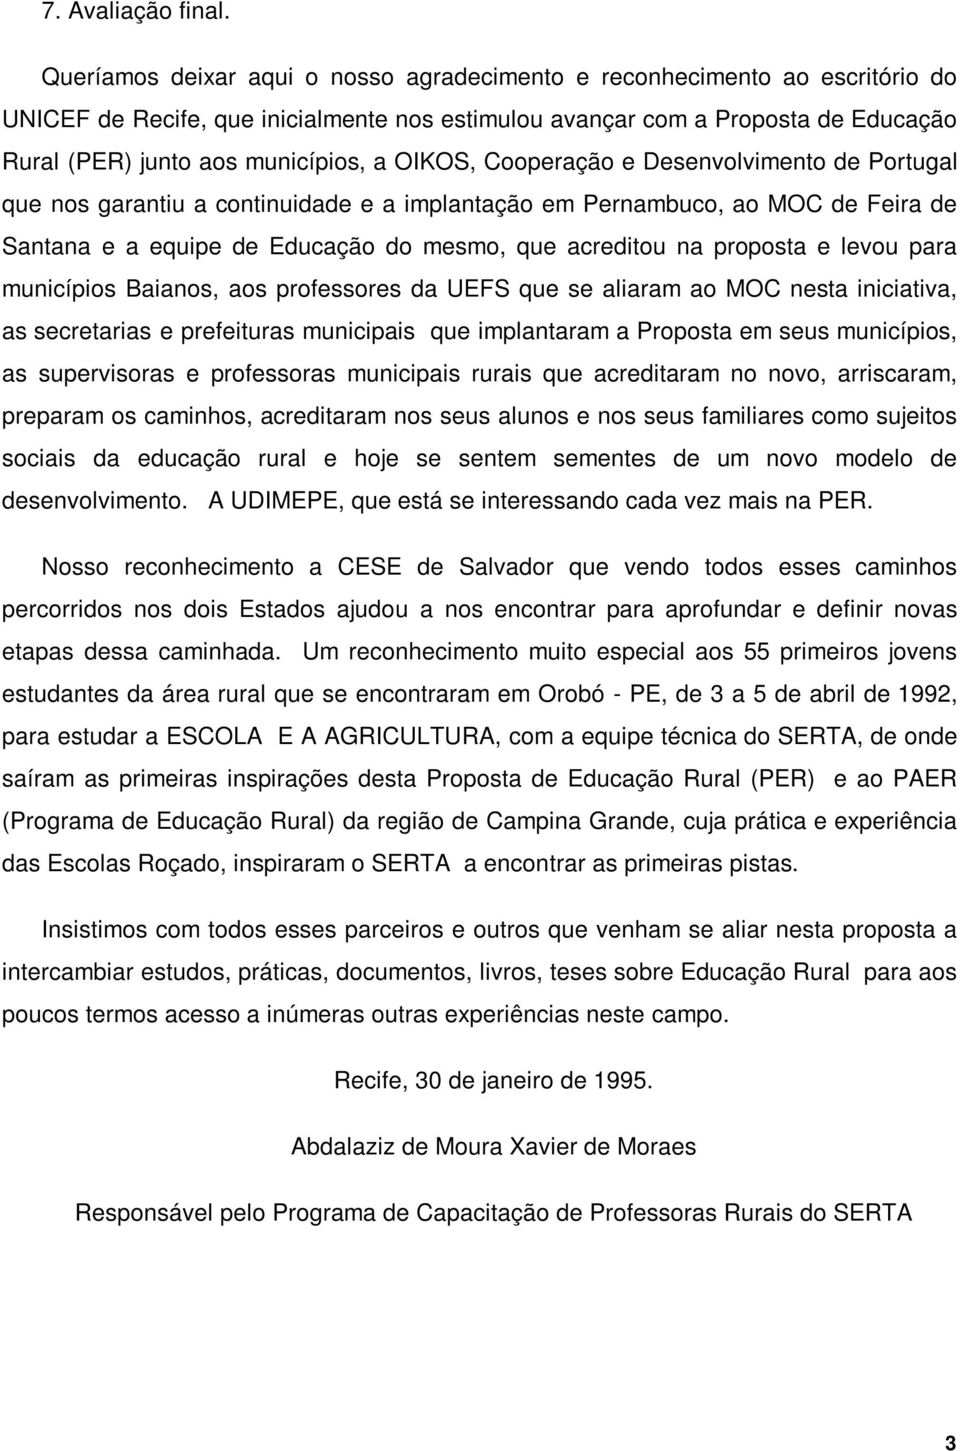 OIKOS, Cooperação e Desenvolvimento de Portugal que nos garantiu a continuidade e a implantação em Pernambuco, ao MOC de Feira de Santana e a equipe de Educação do mesmo, que acreditou na proposta e